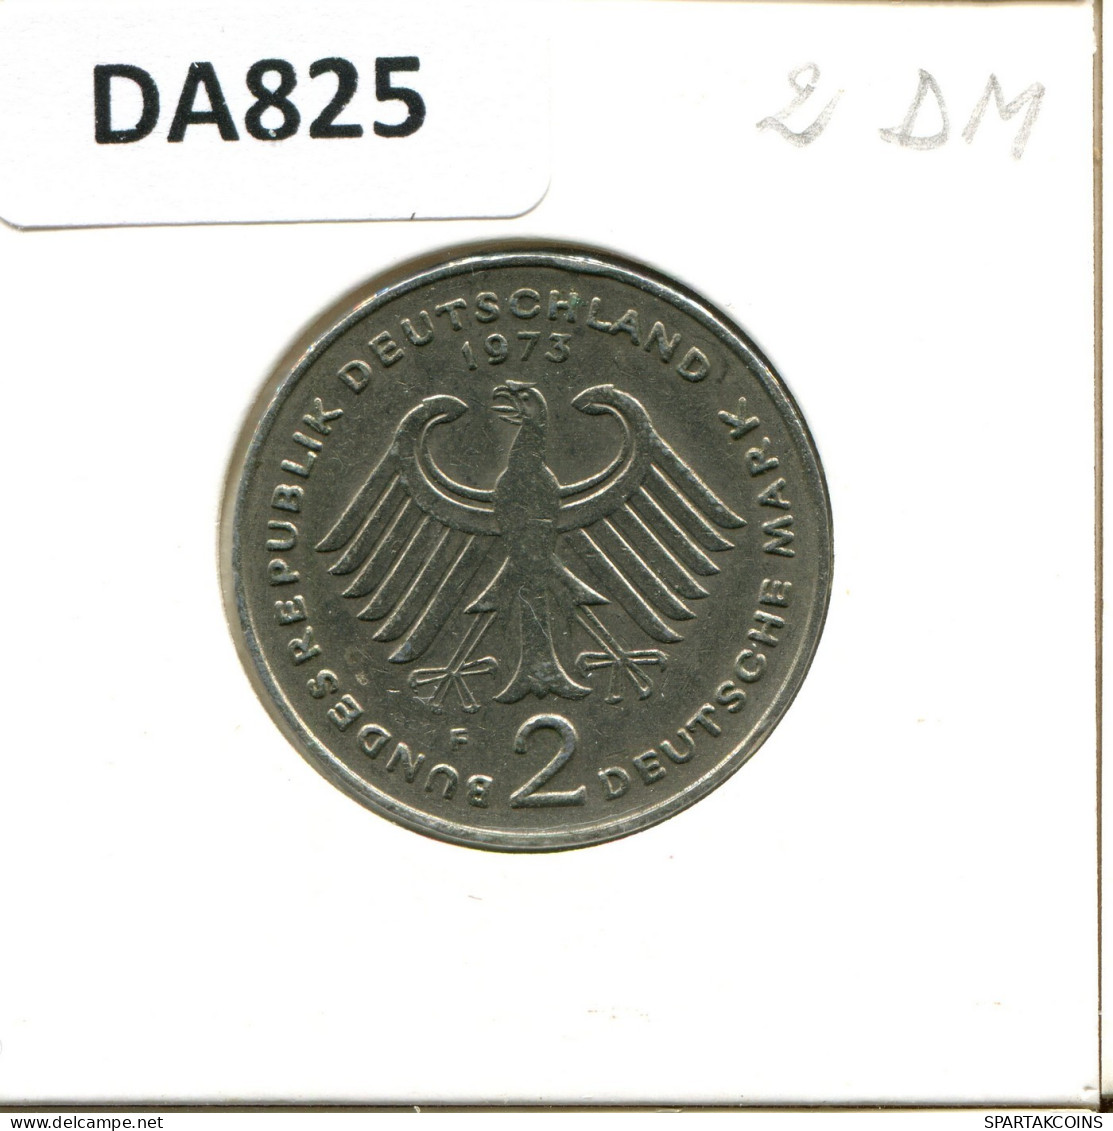 2 DM 1973 F T. HEUSS BRD ALEMANIA Moneda GERMANY #DA825.E.A - 2 Mark